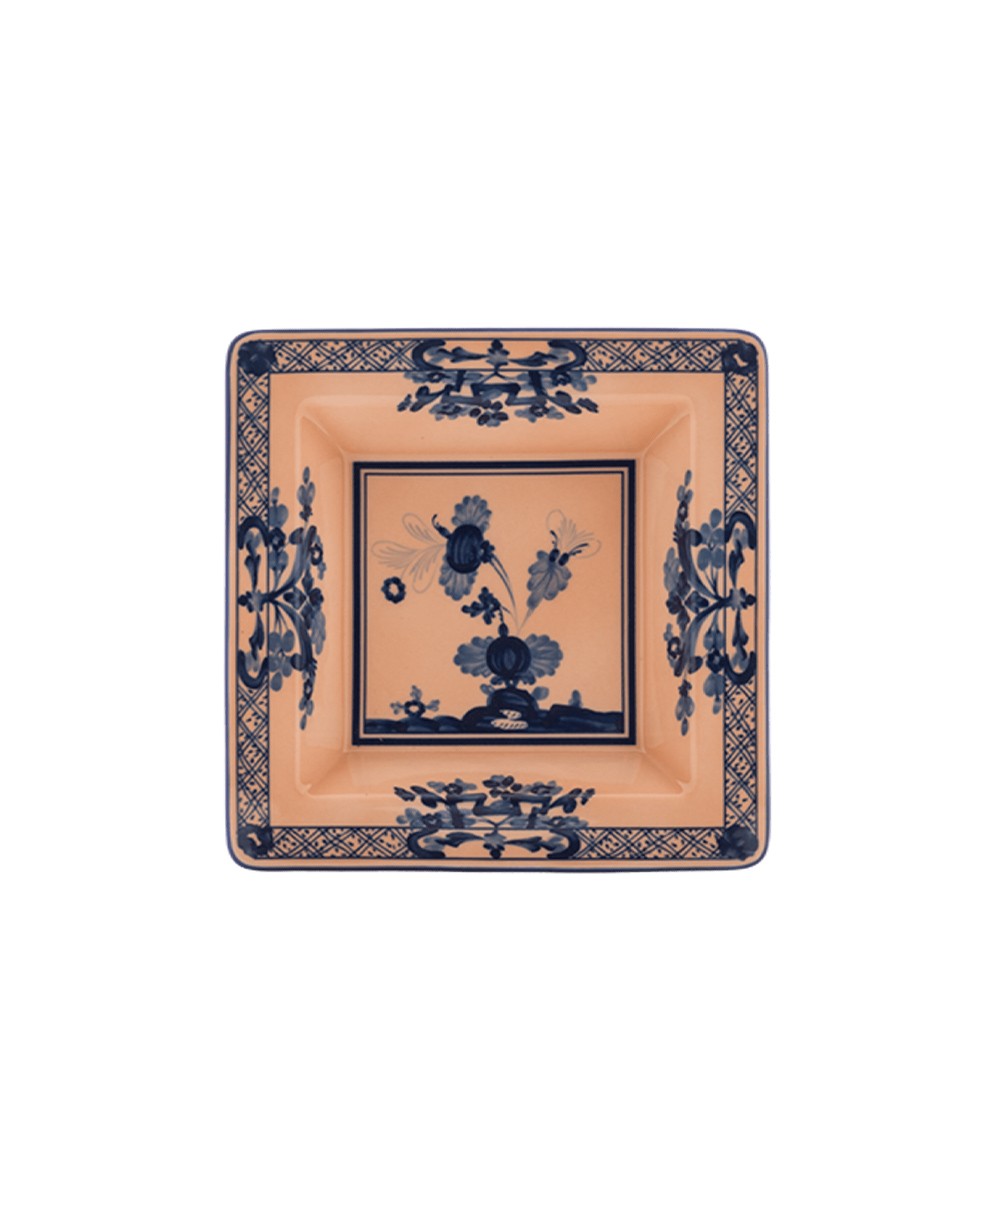 Produktbild "Oriente Cipria Platte" von Ginori 1735 im RAUM Concept store